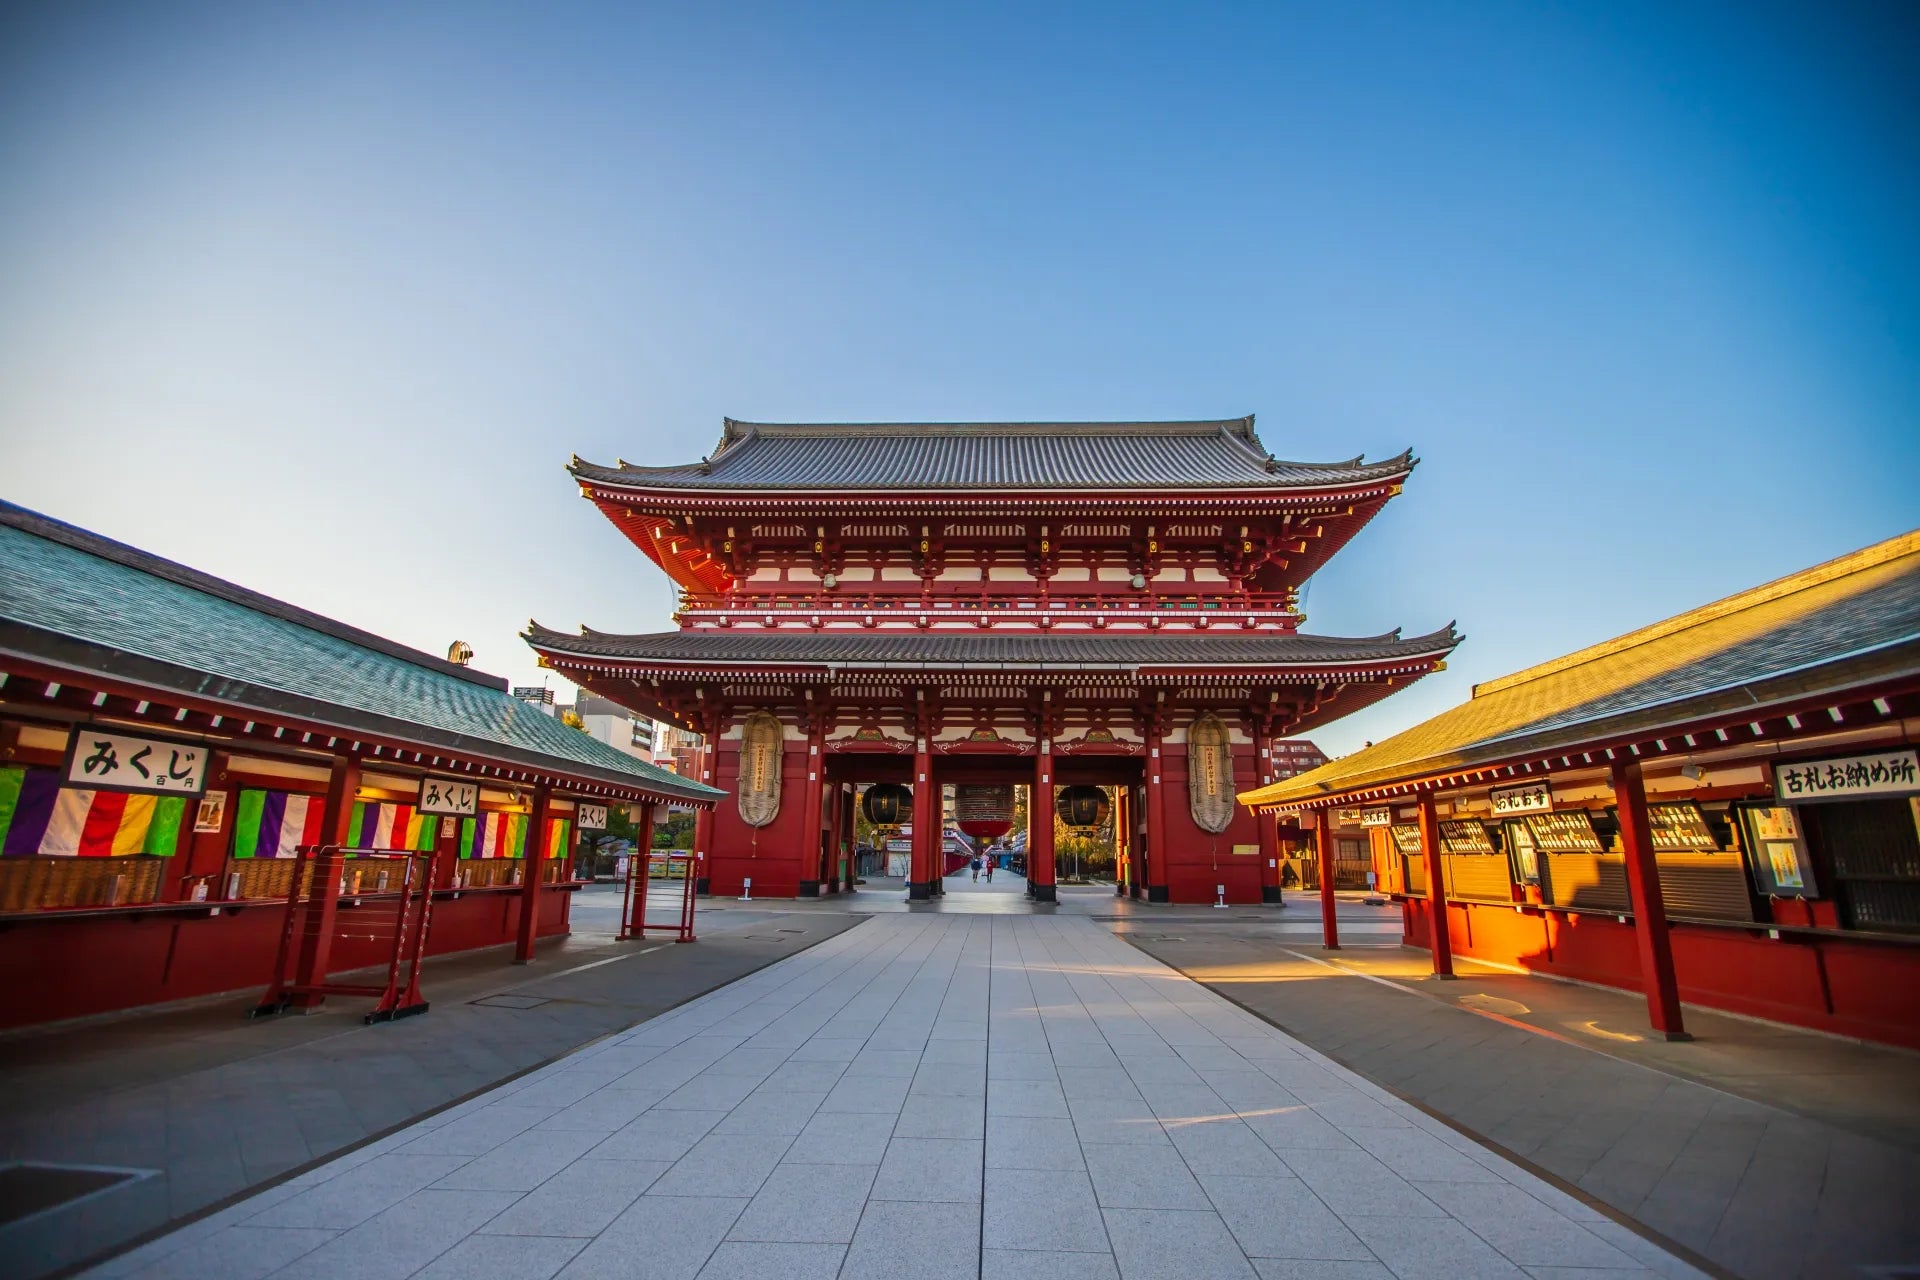 浅草寺の提灯は何色か知っていますか？